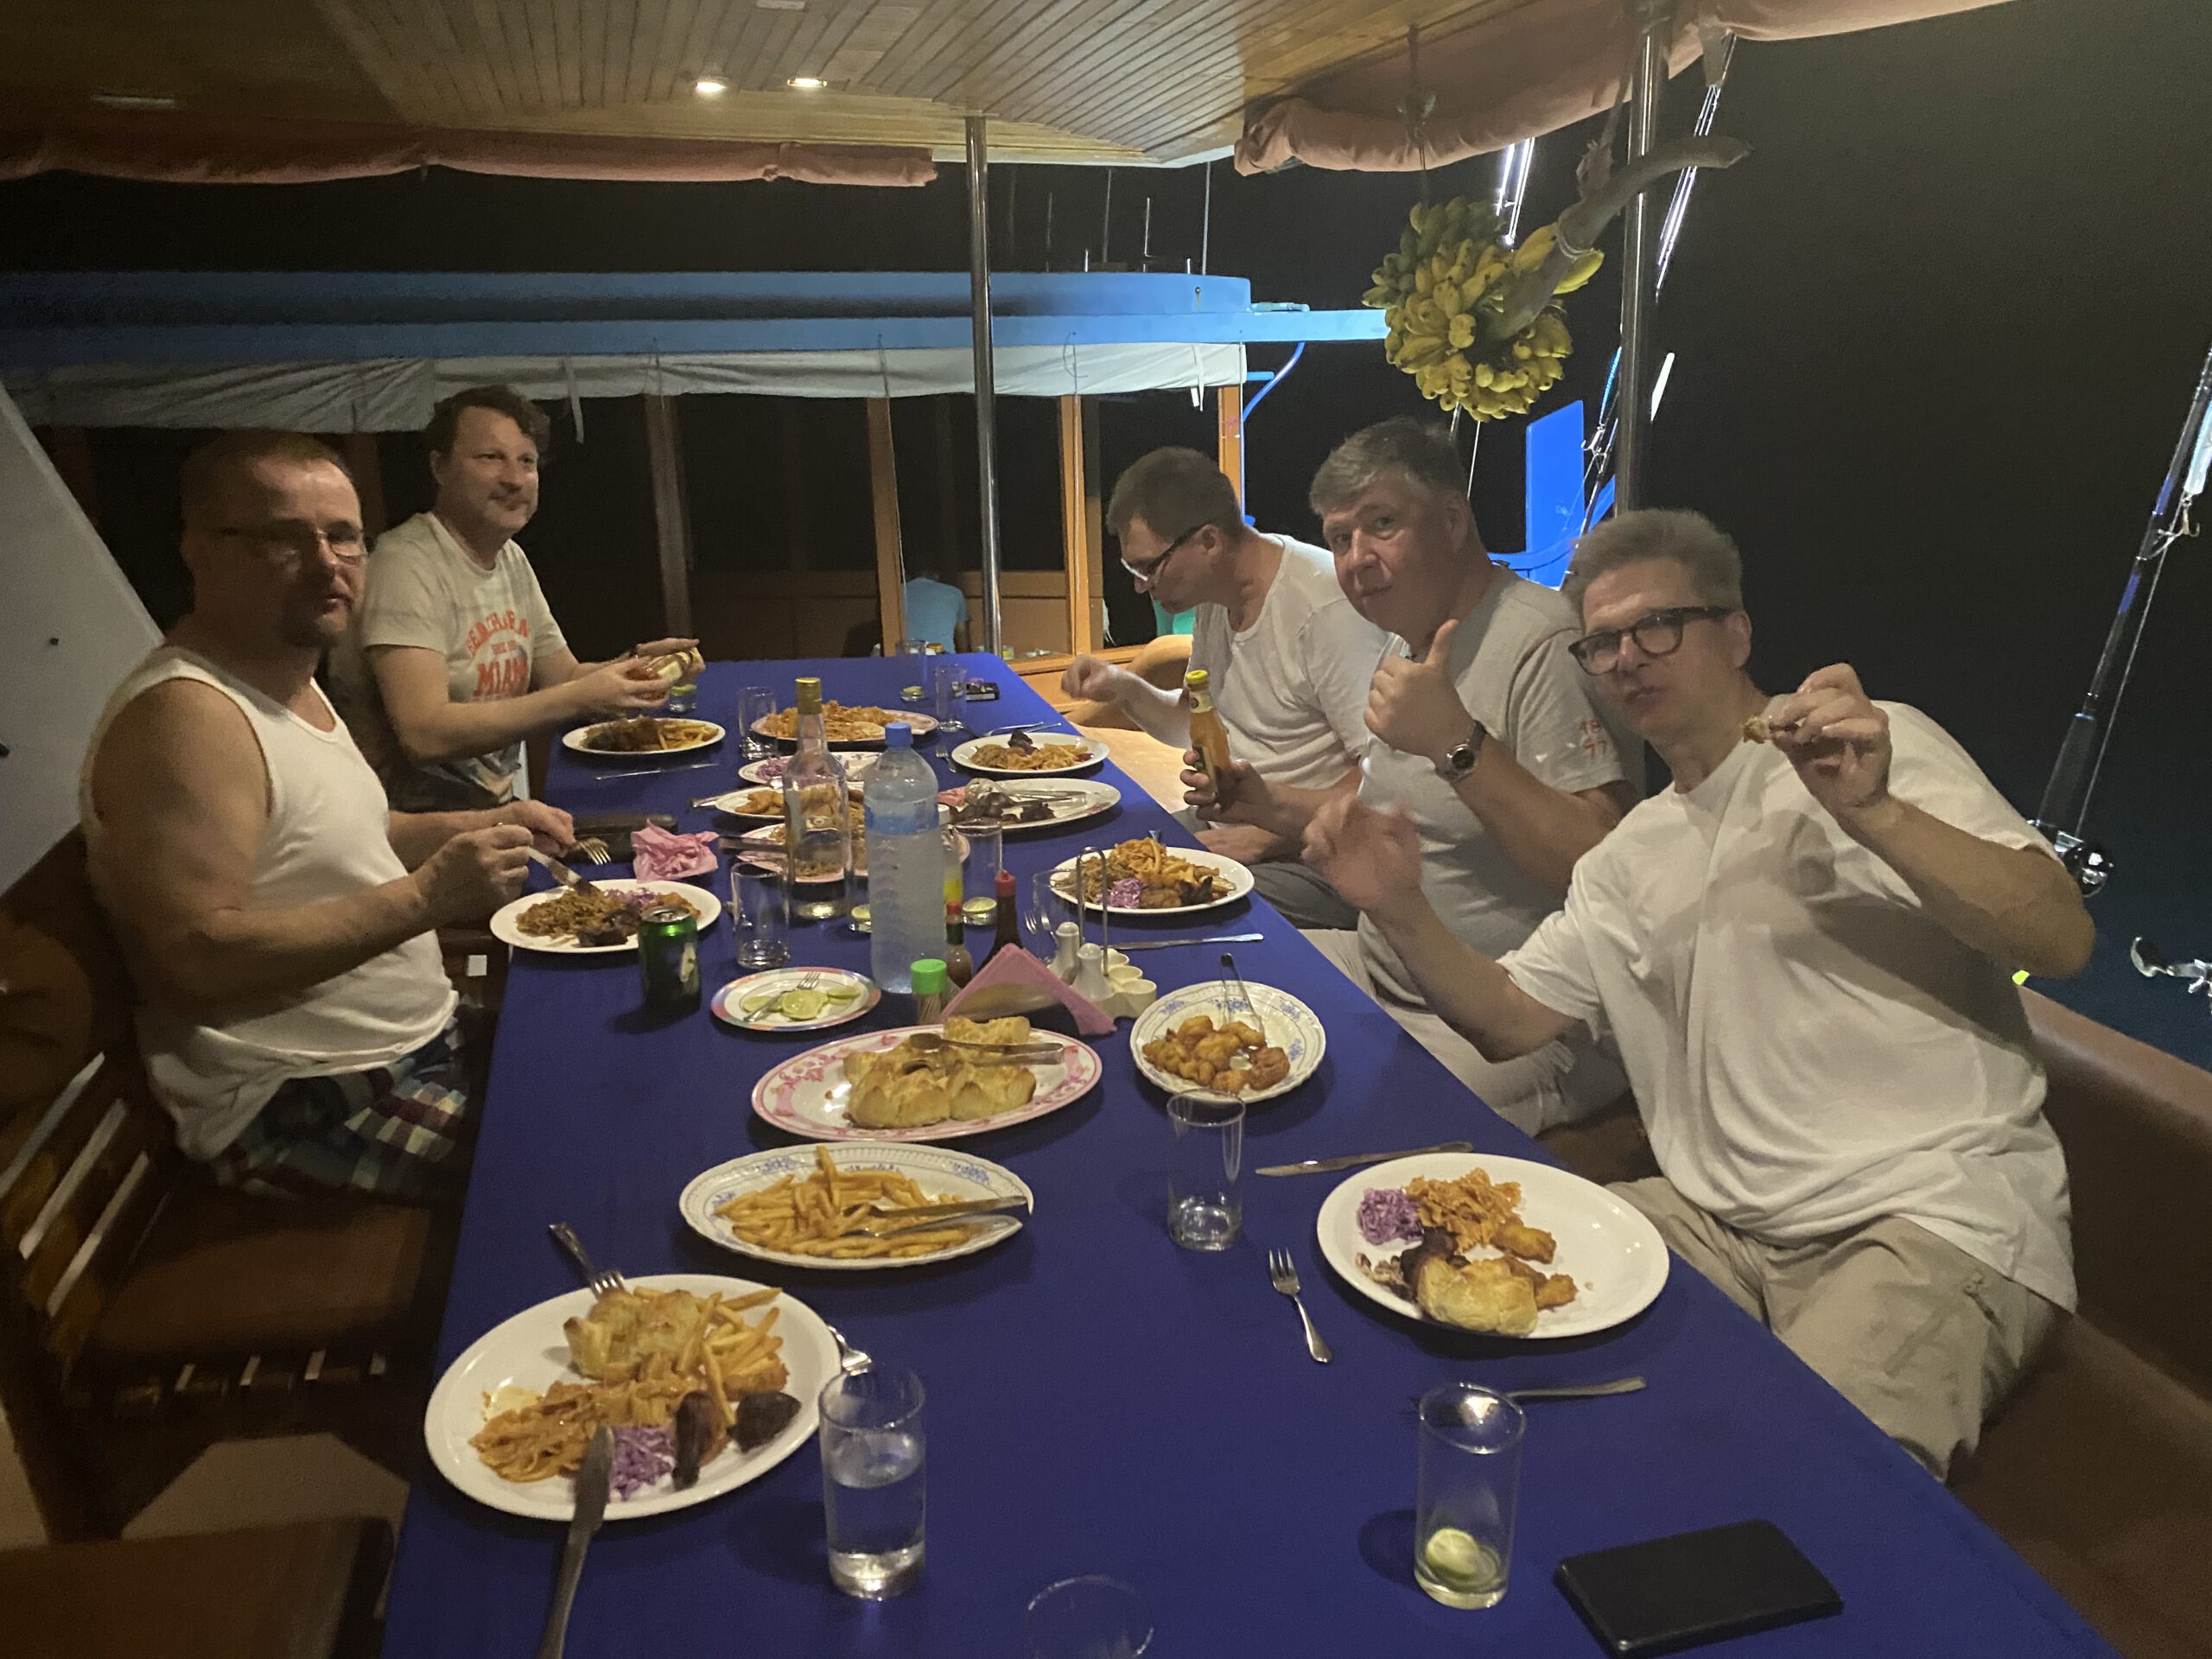 malediivit maldiverna maldives gt gianttrevally bluefintrevally perhokalastus flyfishing flugfiske fluefiske perhokalastusmatka kalastus kalastusmatka kalastusmatkat fishmaster globalfishing